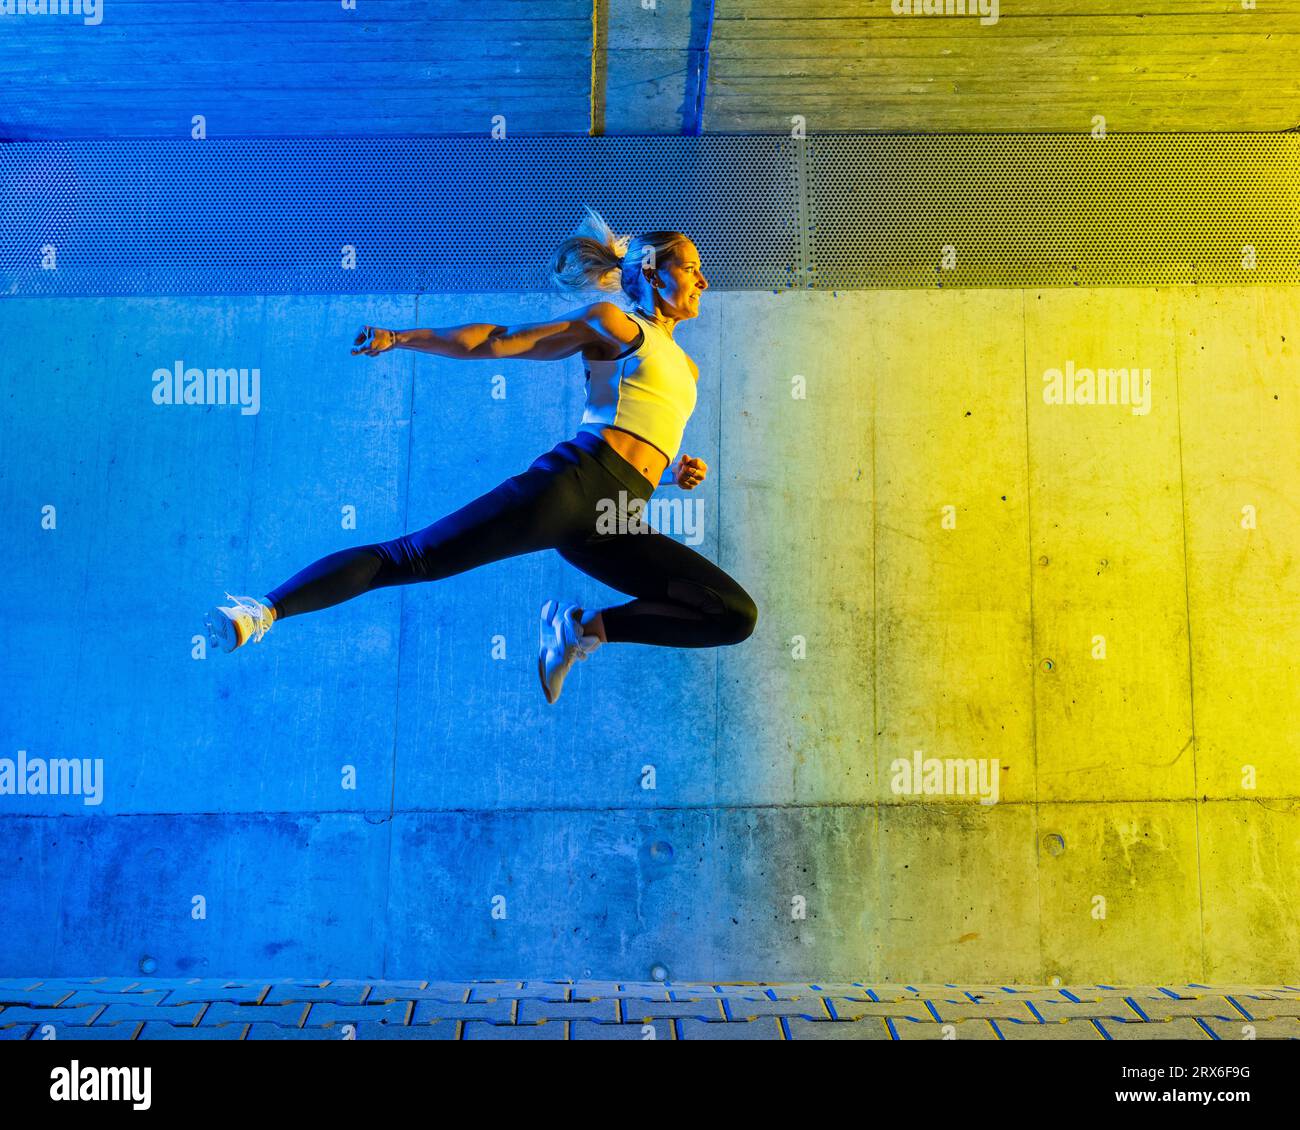 Frau springt vor einer neonfarbenen Wand Stockfoto